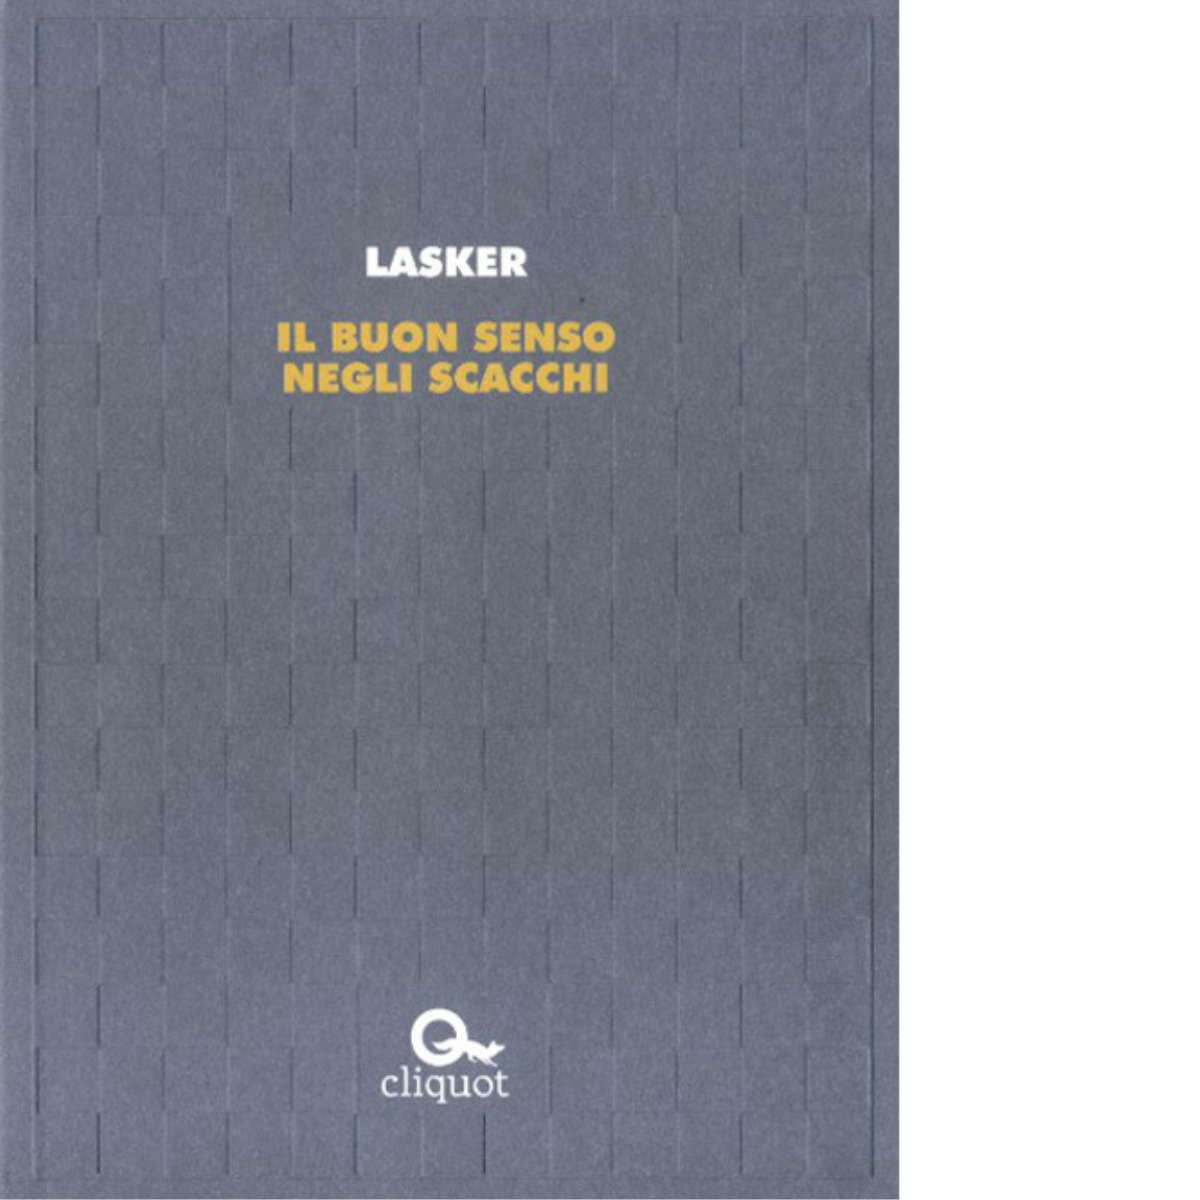 Il buon senso negli scacchi di Emanuel Lasker - Cliquot, 2016 libro usato